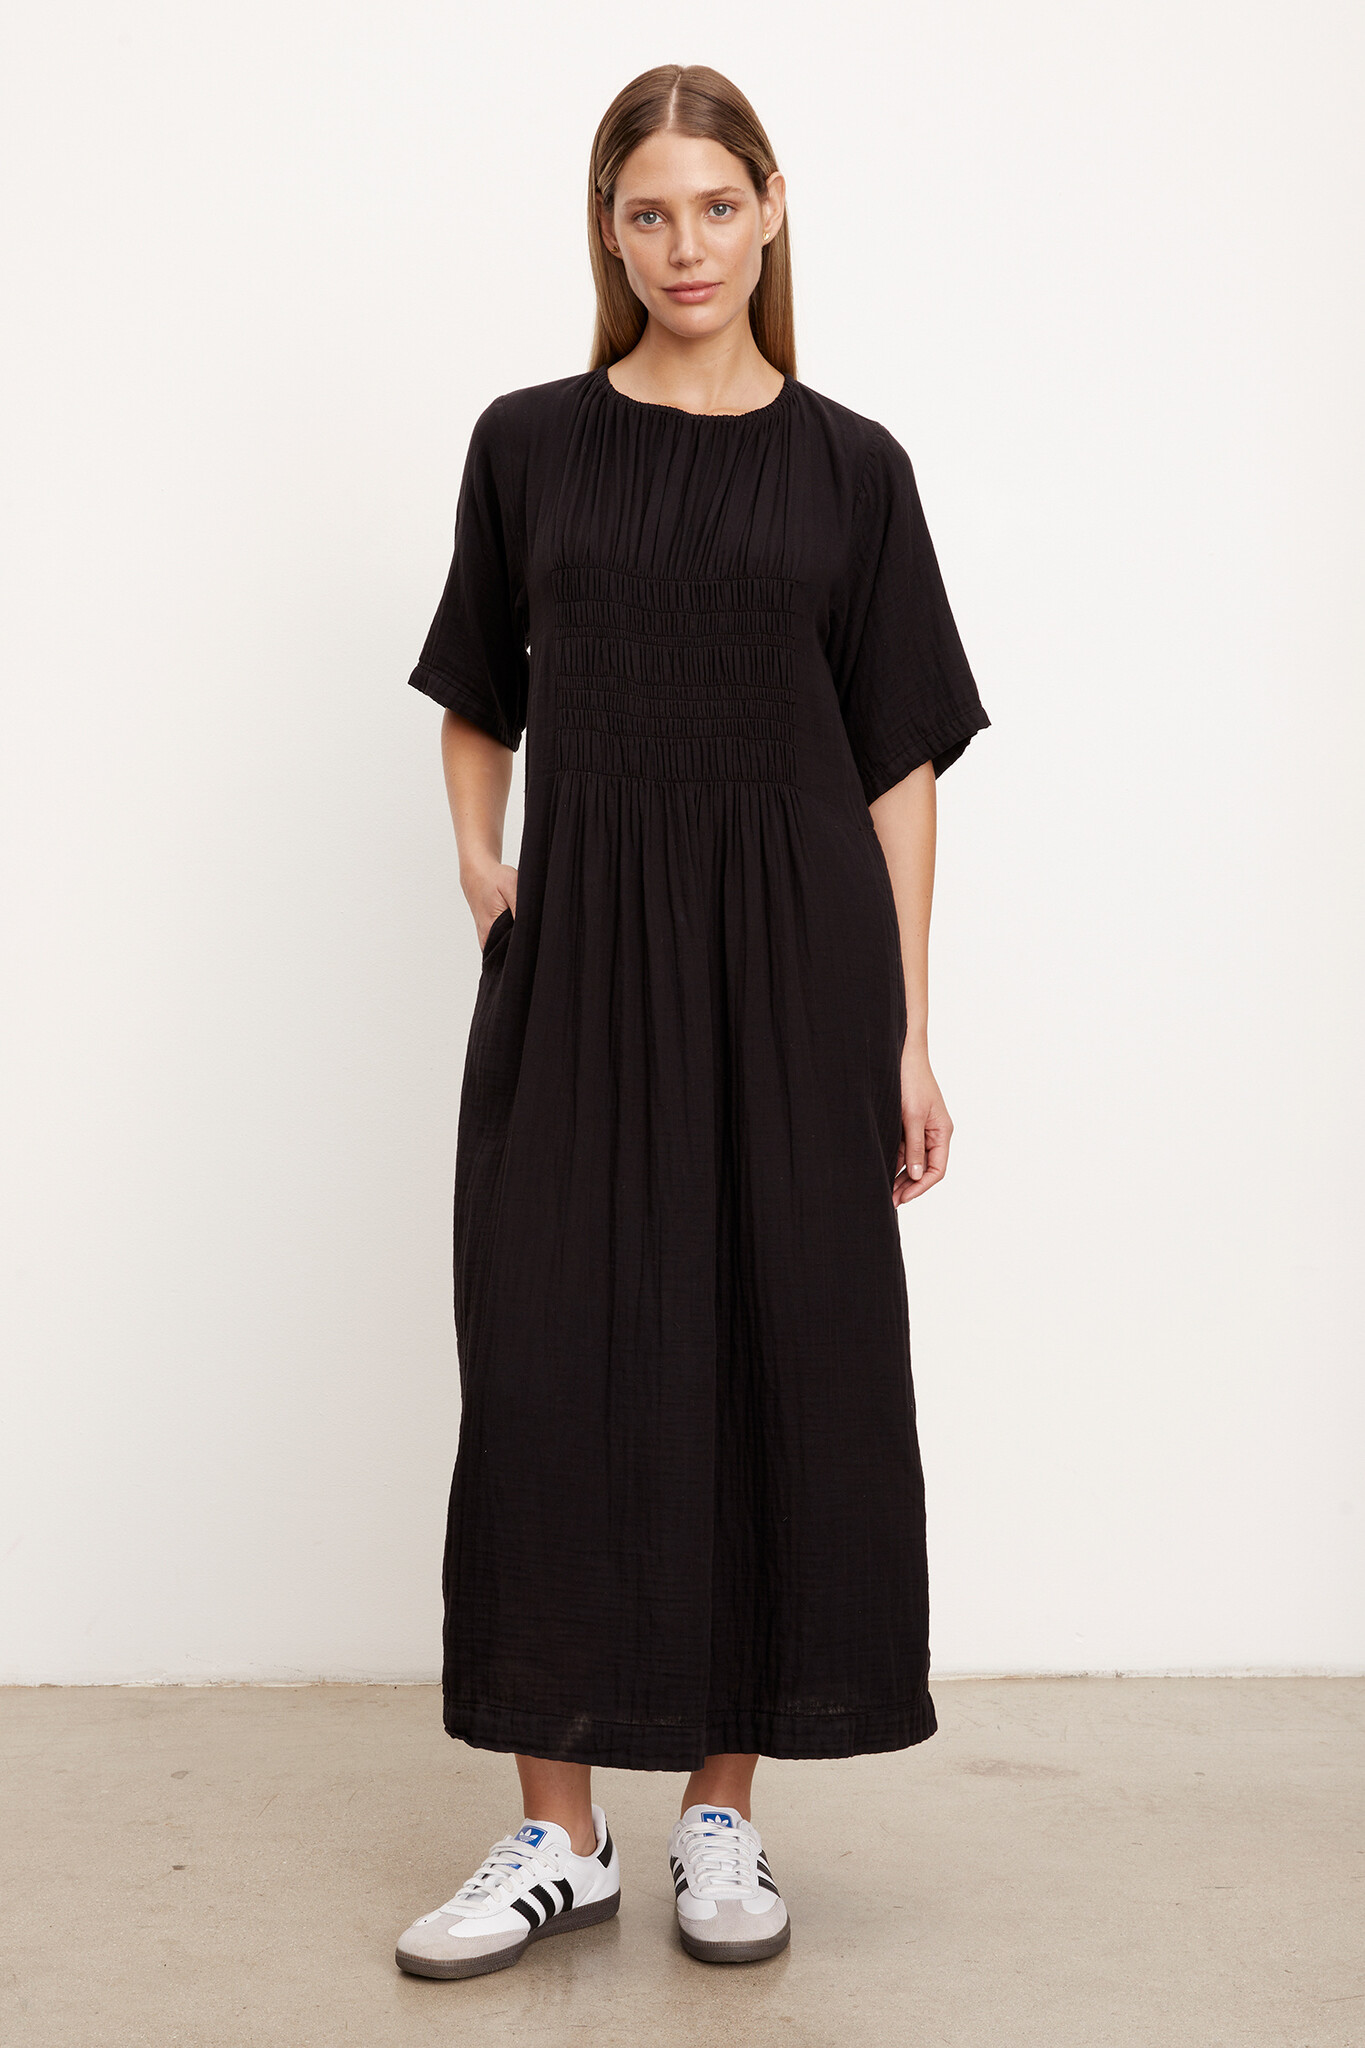 Velvet Ashleigh cotton gauze shirred dress - Crabapple Clothing Company